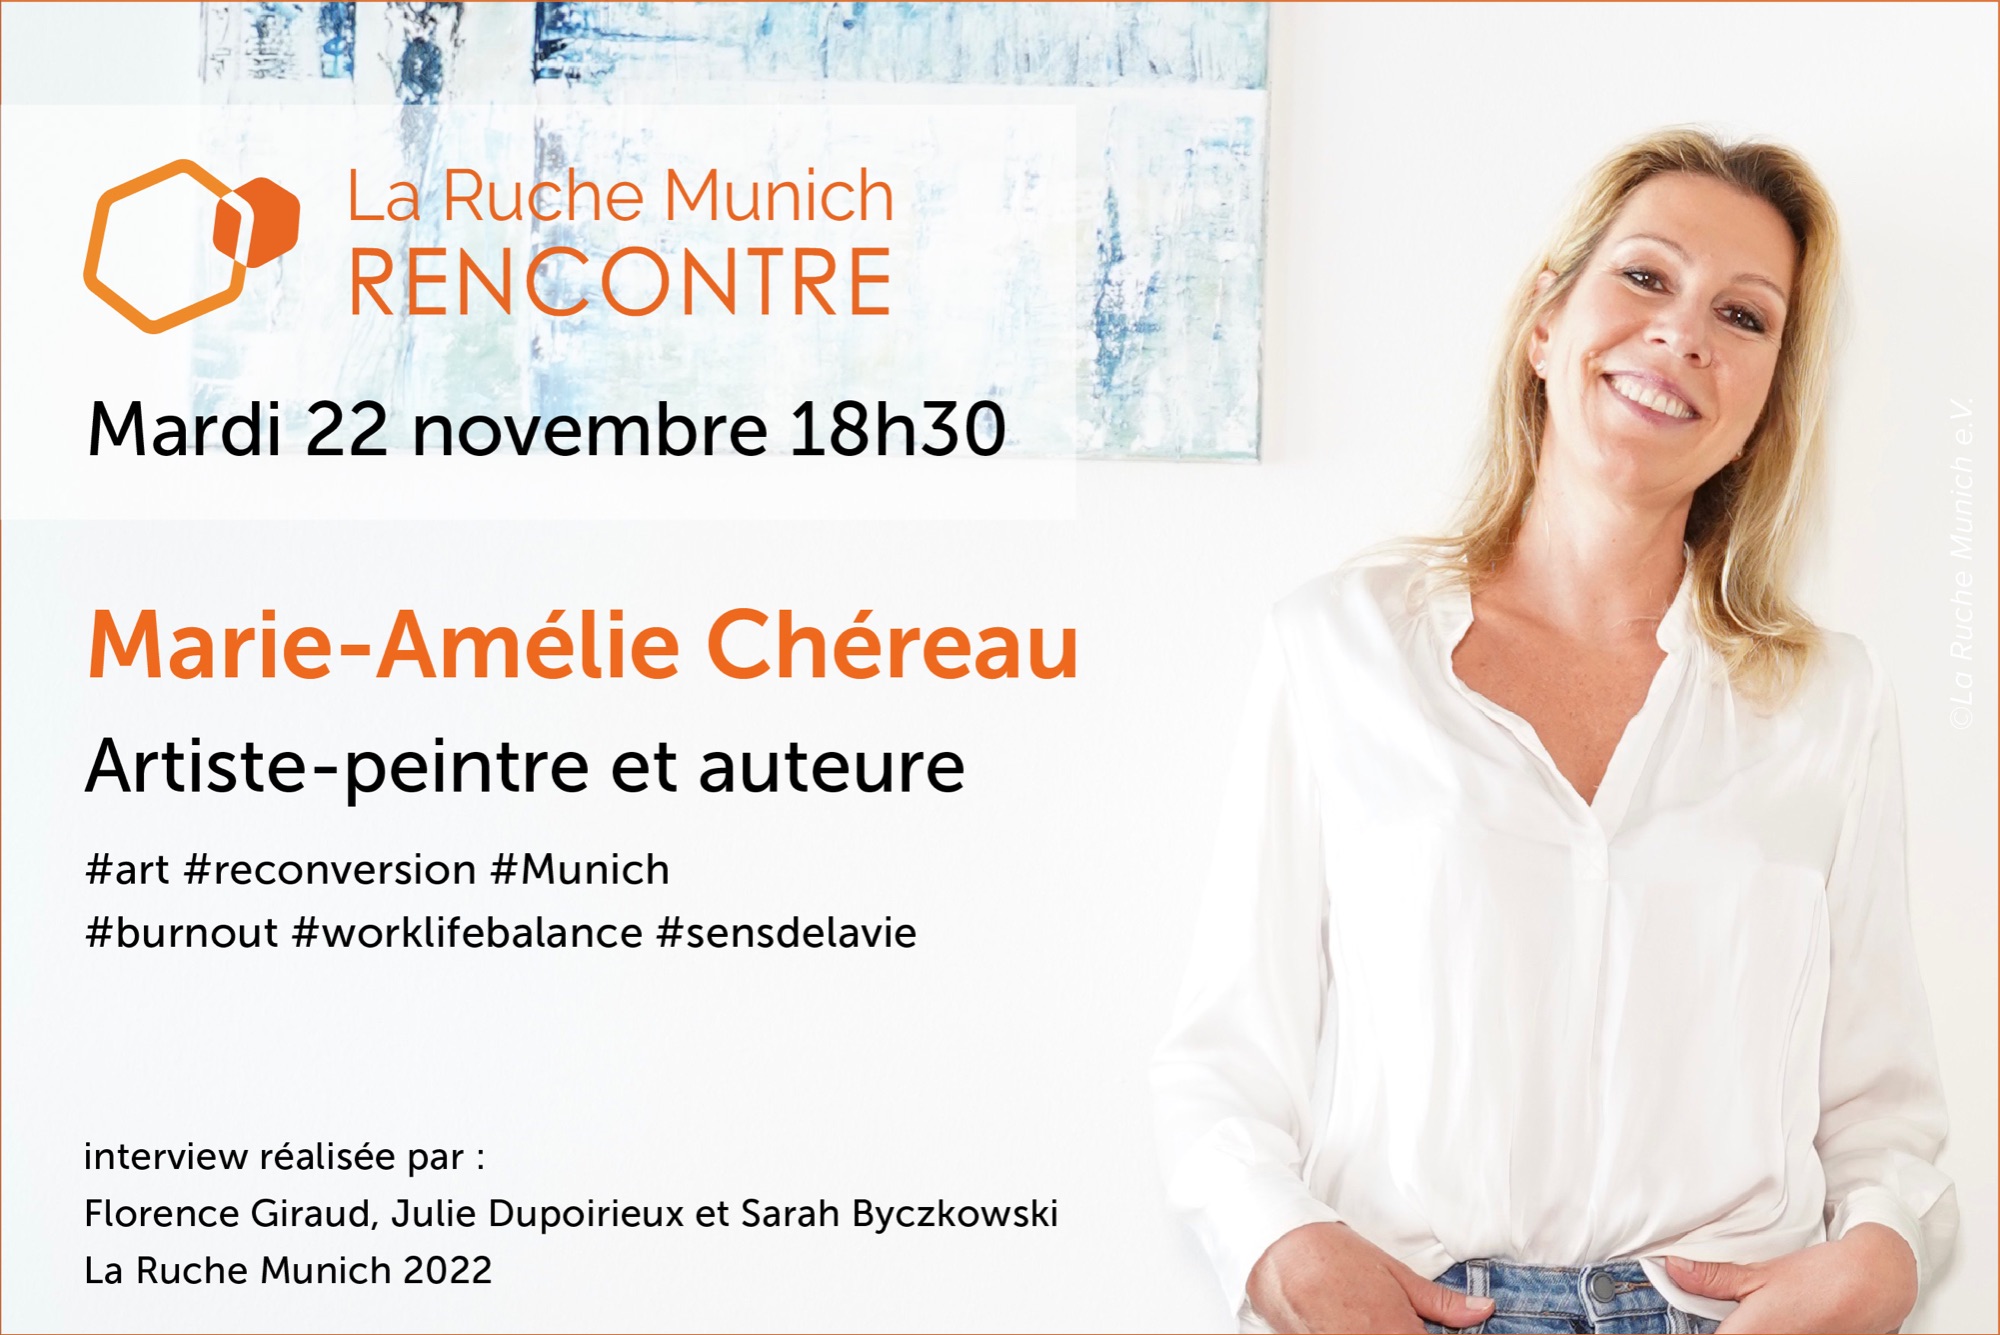 Soirée Rencontre-interview avec Marie-Amélie Chéreau, artiste-peintre et auteure